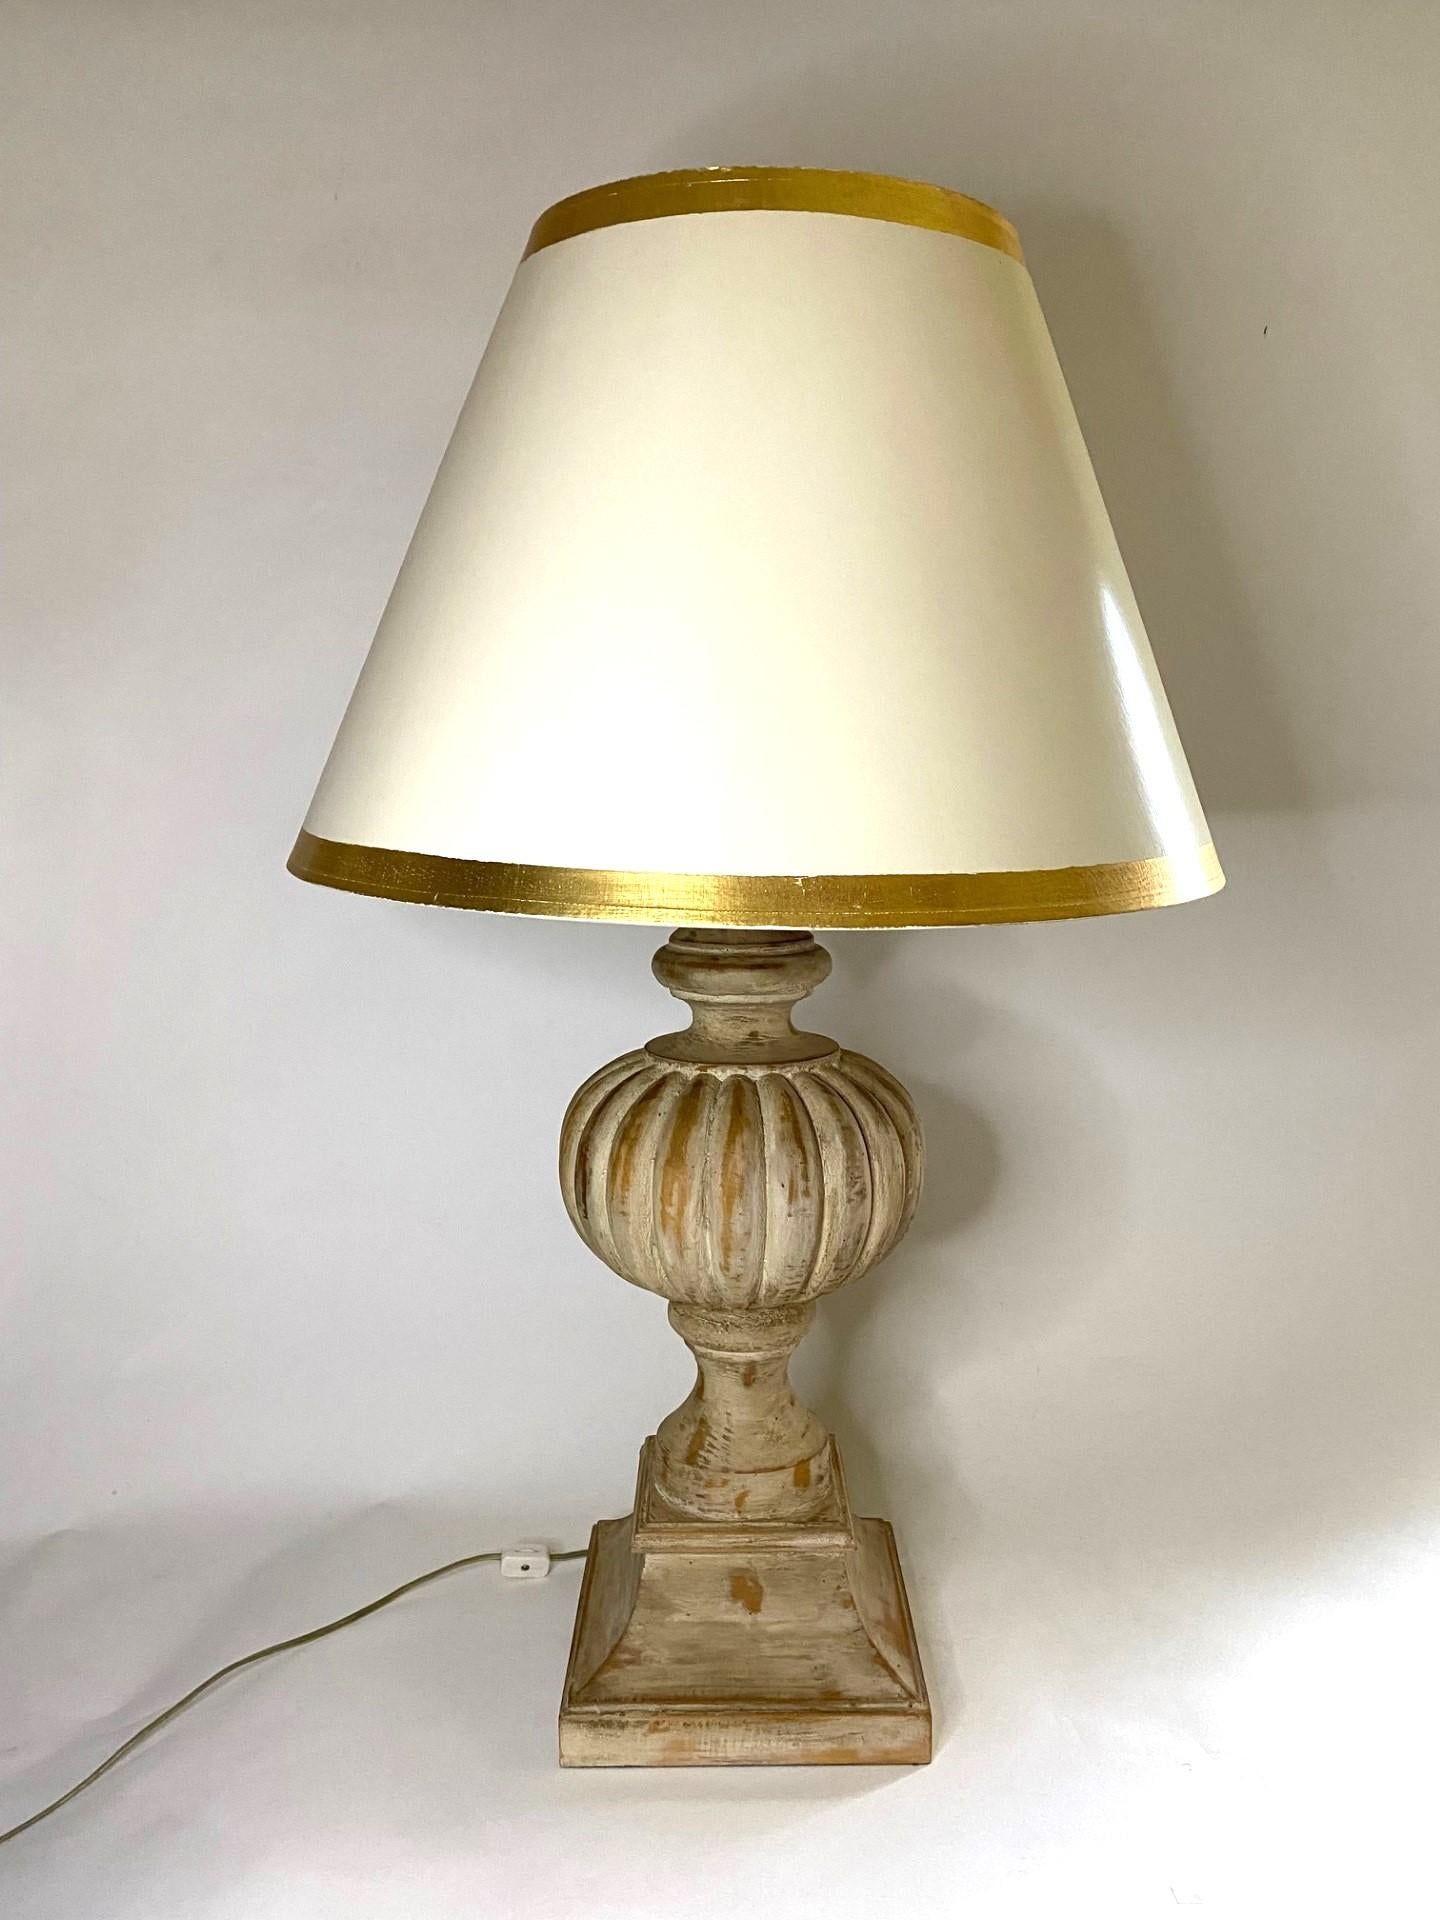 Attrayante lampe de table en bois sculpté, blanc antique et lavé, avec abat-jour tambour blanc et bordure dorée. 